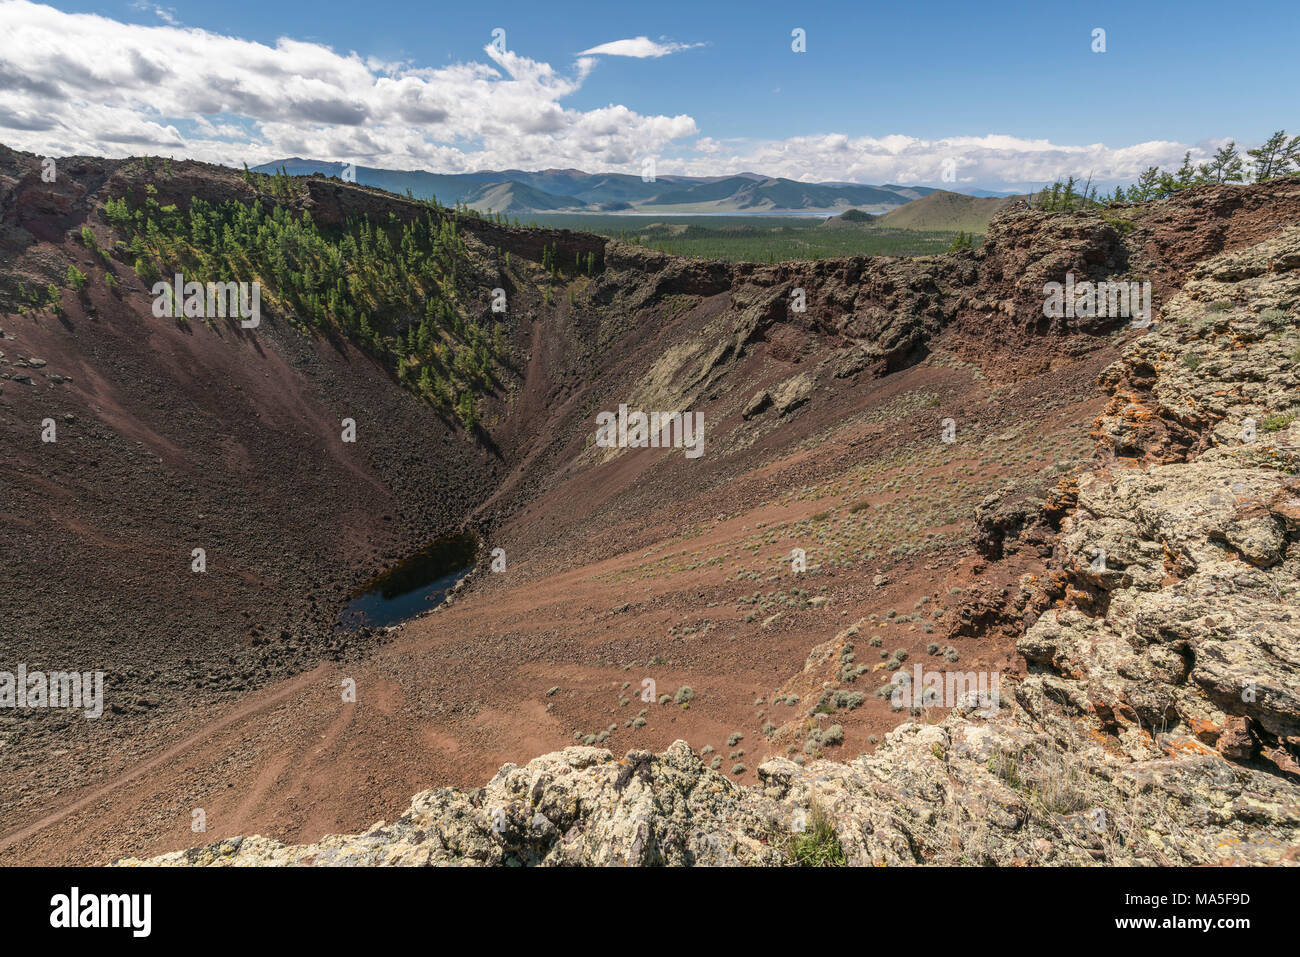 Khorgo cratere del vulcano e lago bianco in background. Distretto Tariat, Nord provincia Hangay, Mongolia. Foto Stock